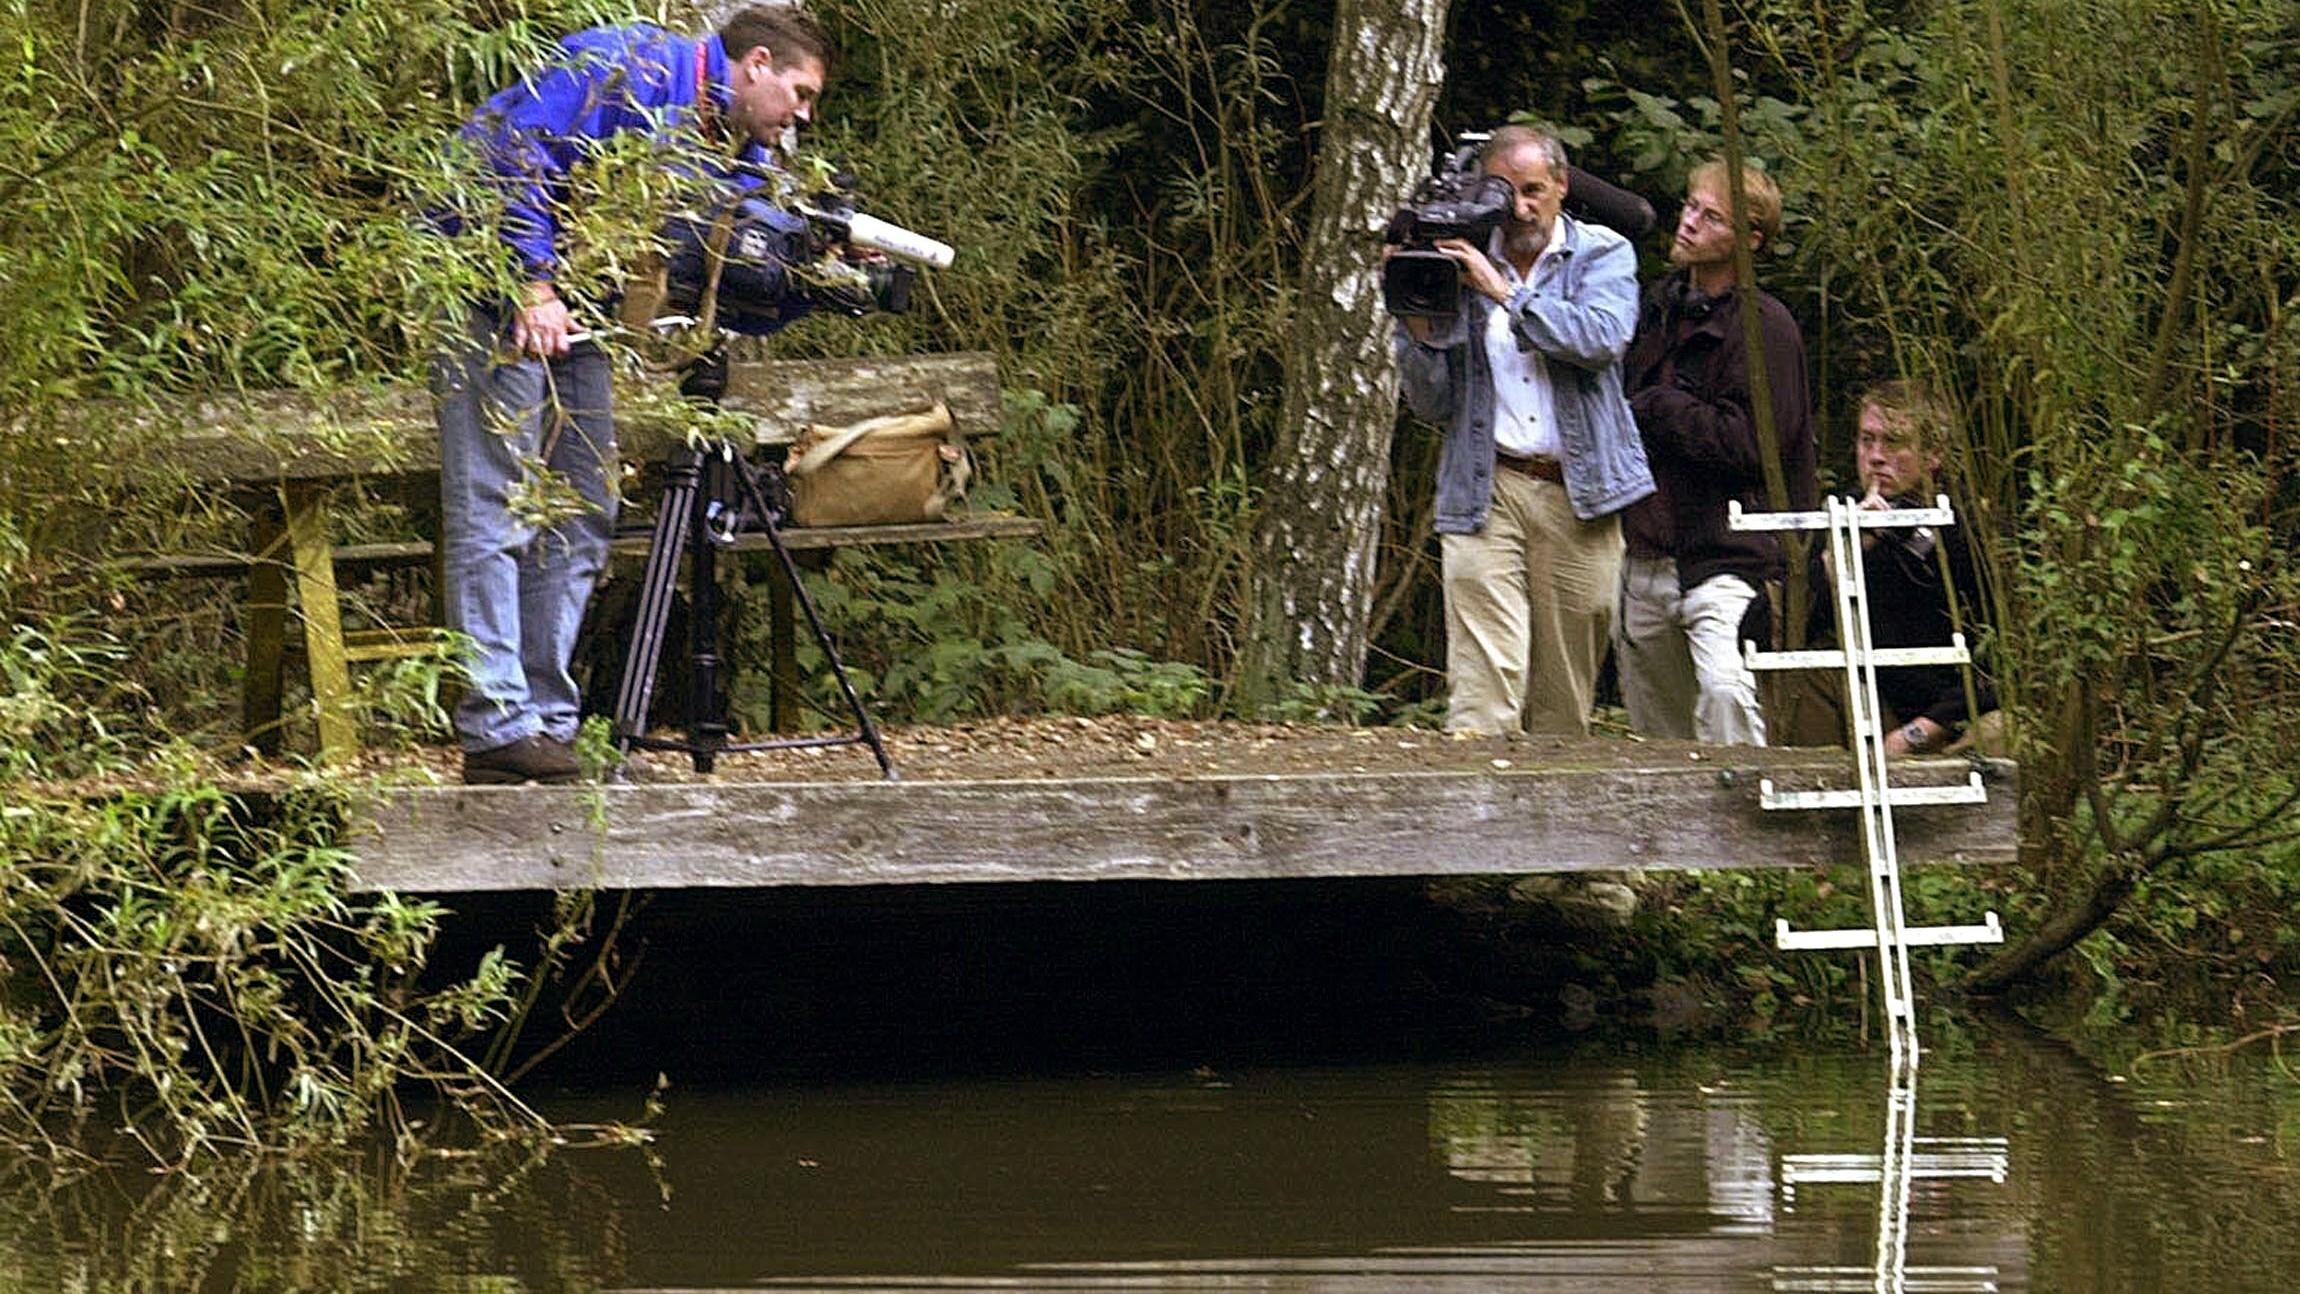 Kamerateams filmen am 2.10.2002 einen Steg am Rande eines Waldsees bei Schlüchtern in Osthessen. Hier war am 1. Oktober die Leiche des ermordeten elfjährigen Frankfurter Bankierssohns Jakob von Metzler gefunden worden. Unterdessen wurde ein 27-jährig